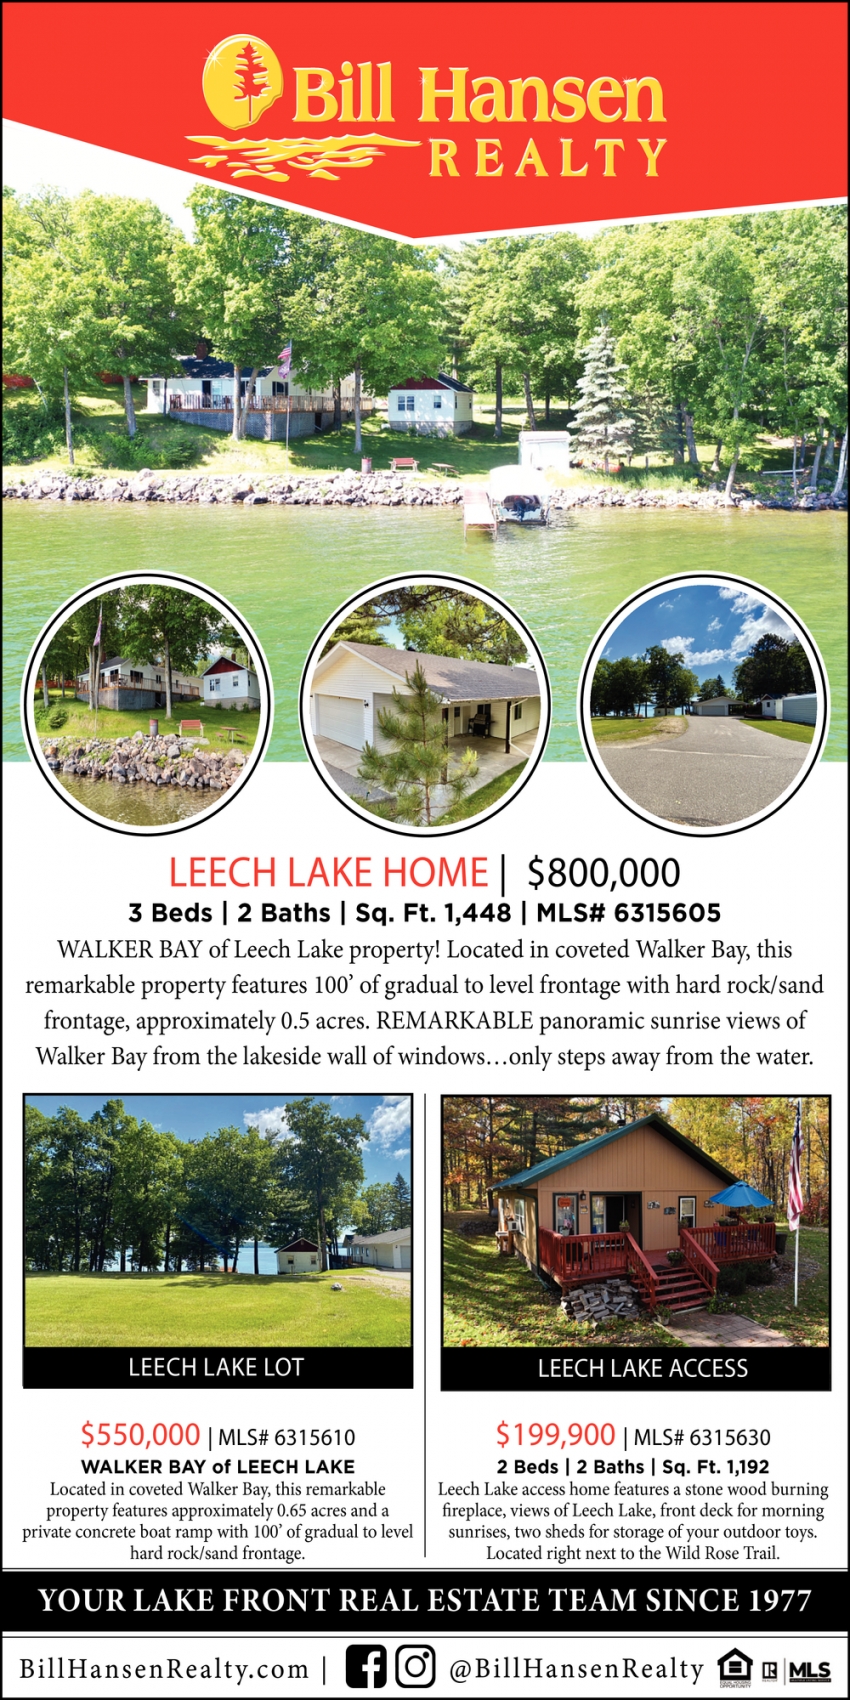 Leech Lake Home